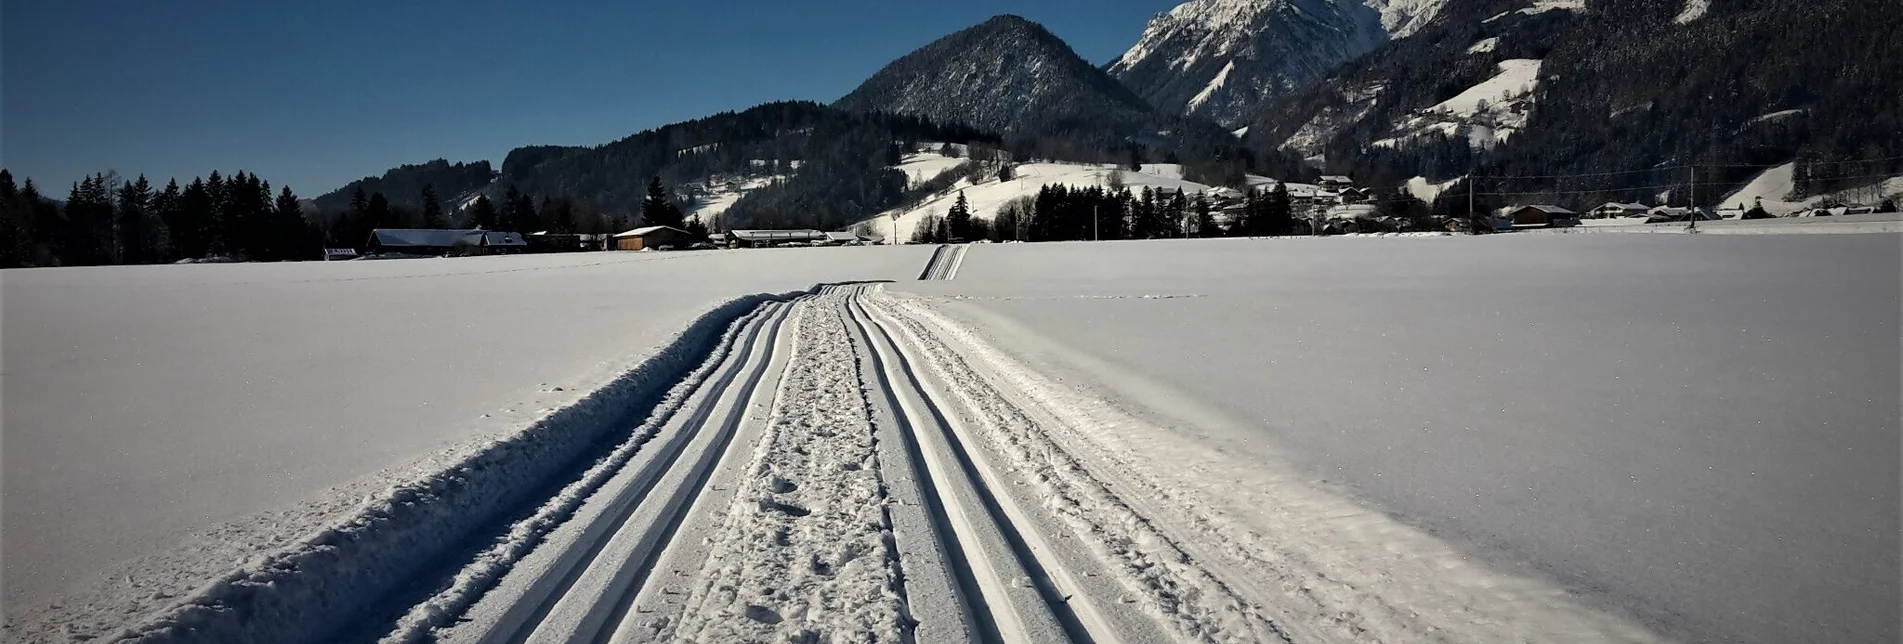 Cross-Country Skiing XC trail "Kufstein" Weißenbach - Touren-Impression #1 | © Unknown